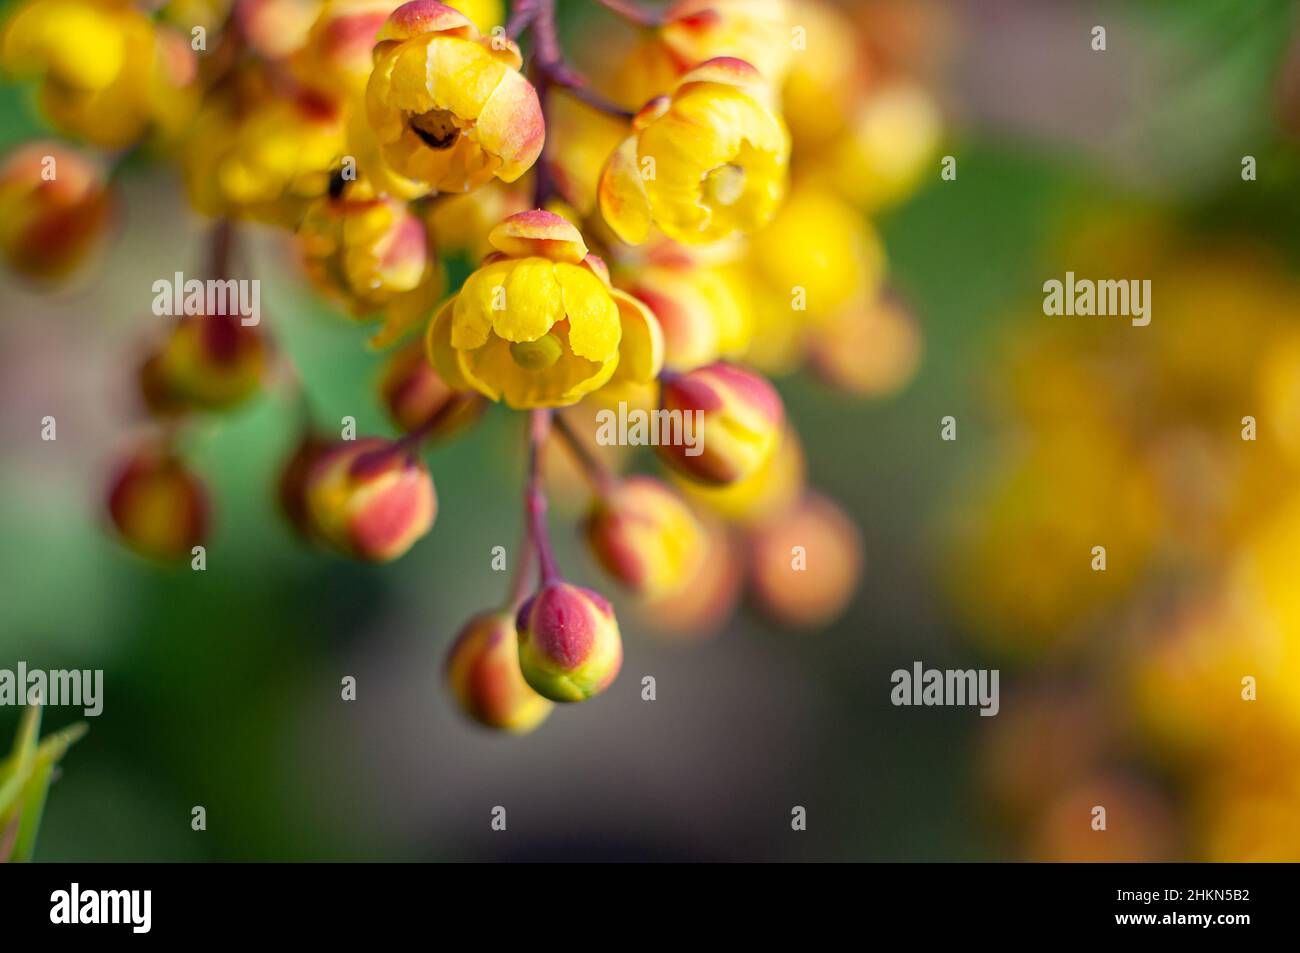 Sonnige gelbe Berberblüten, Makrofotografie eines blühenden Gartenstrauch. Der Frühling kommt, warme Stimmung. Selektiver Fokus und unscharfer Hintergrund. Stockfoto